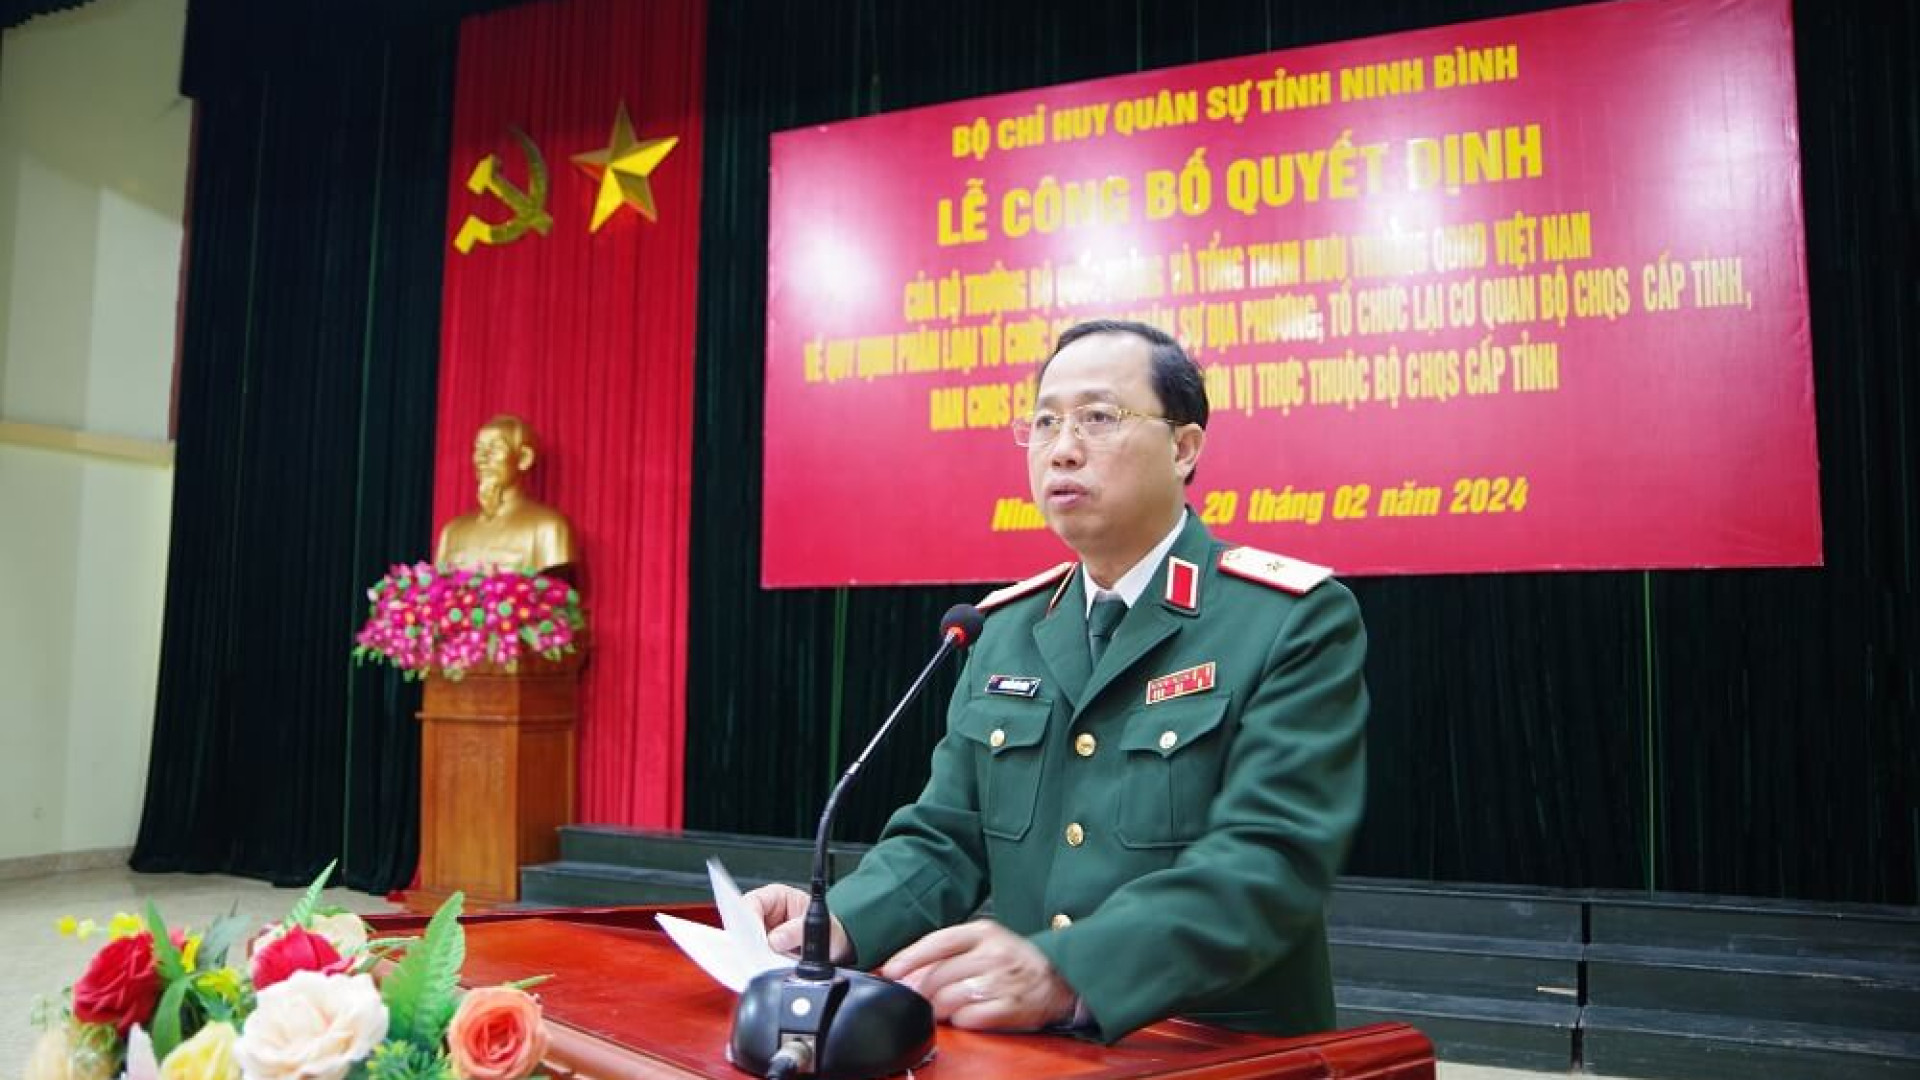 Bộ CHQS tỉnh Ninh Bình: Công bố quyết định về tổ chức lại cơ quan Bộ CHQS cấp tỉnh, Ban CHQS cấp huyện và các đơn vị trực thuộc Bộ CHQS tỉnh.